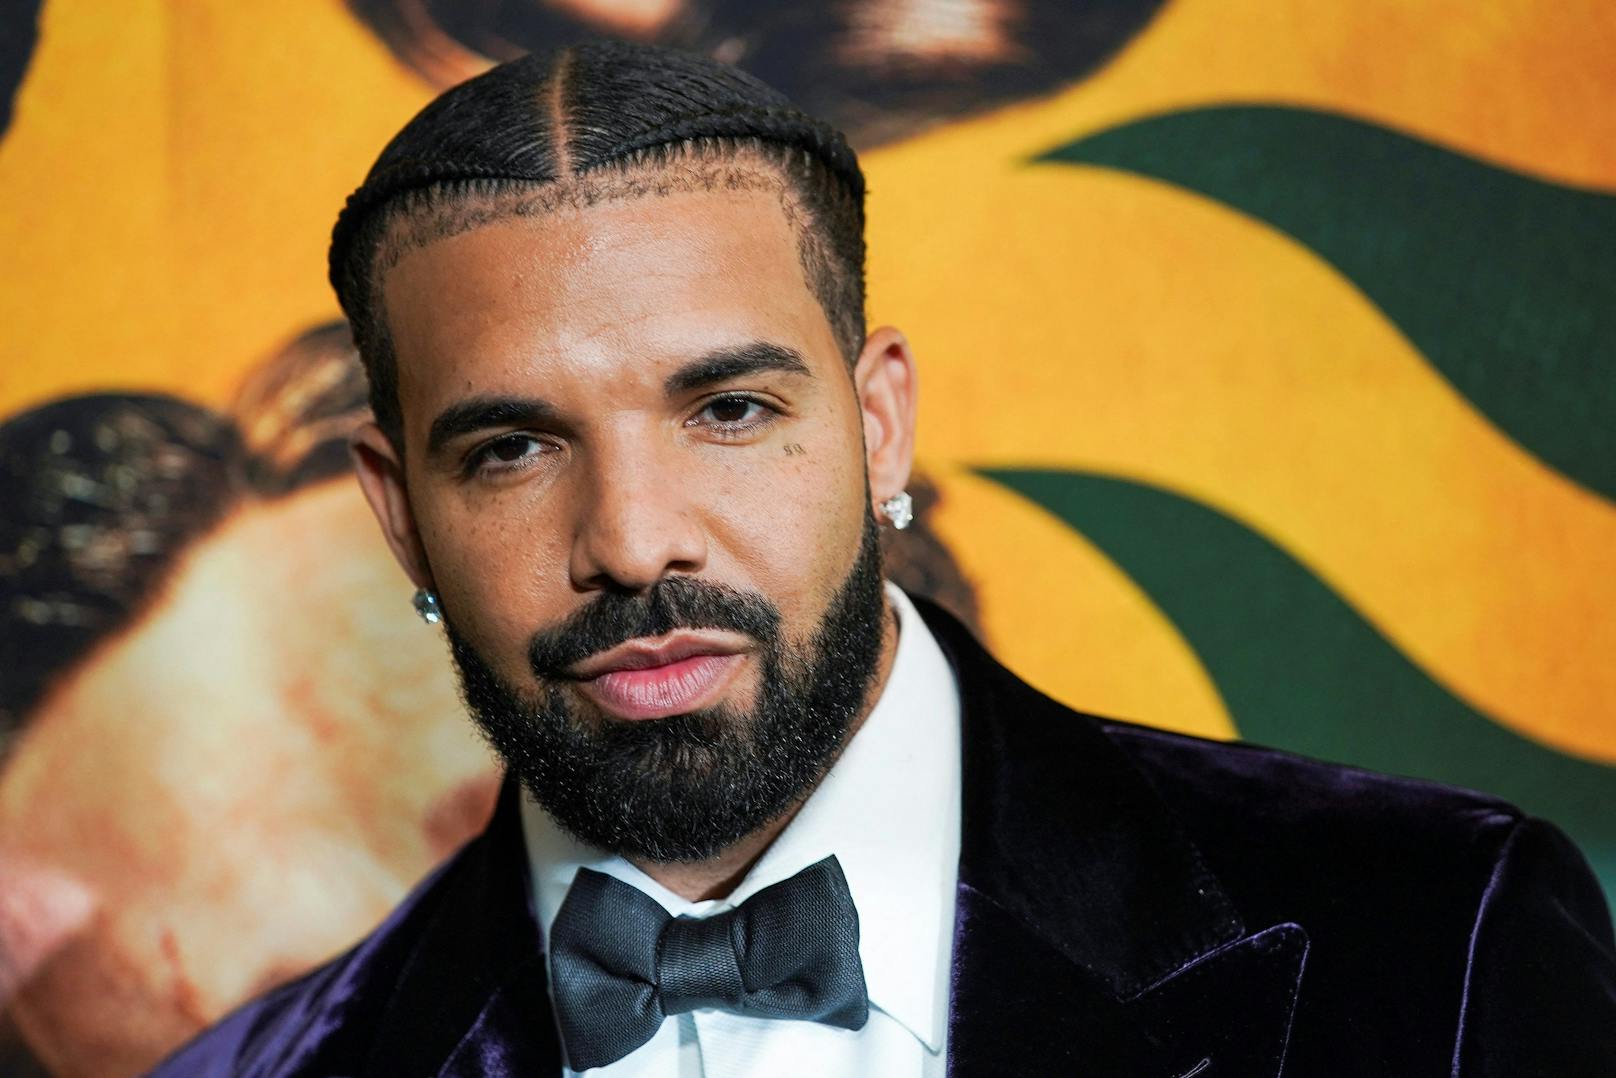 Gesundheitliche Probleme: Drake legt Karriere-Pause ein